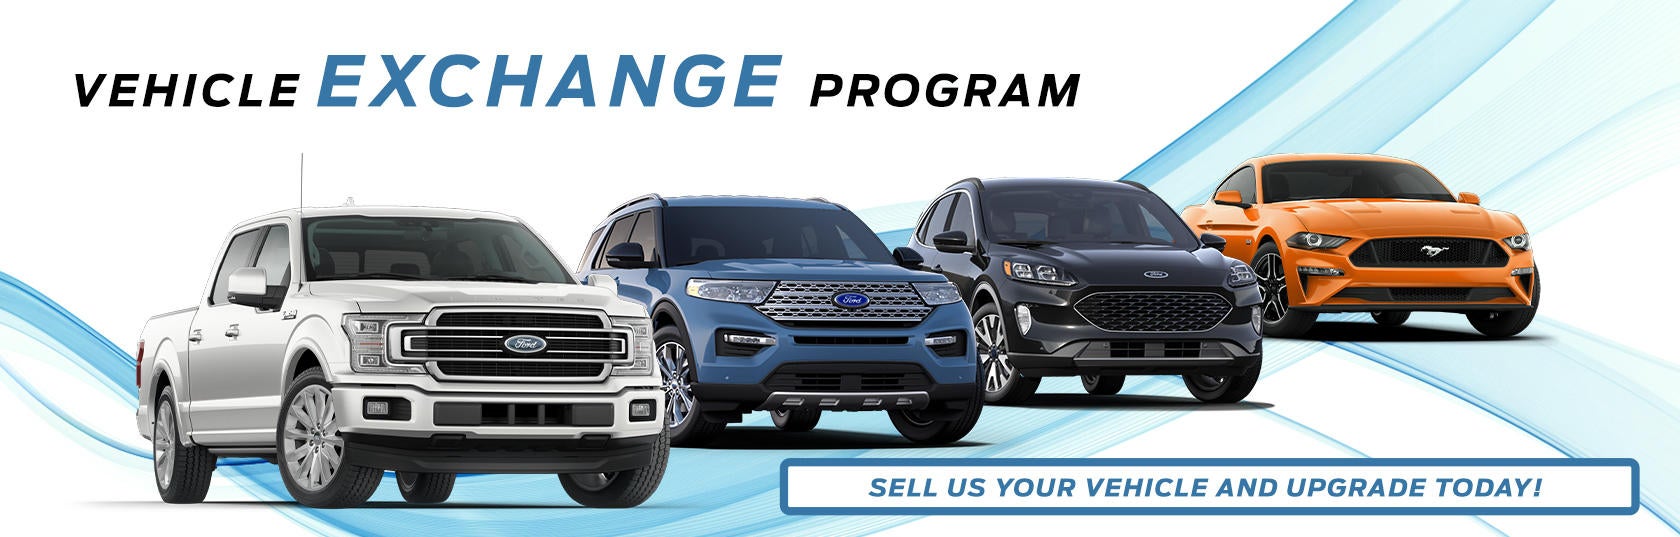 vehicle exchange program